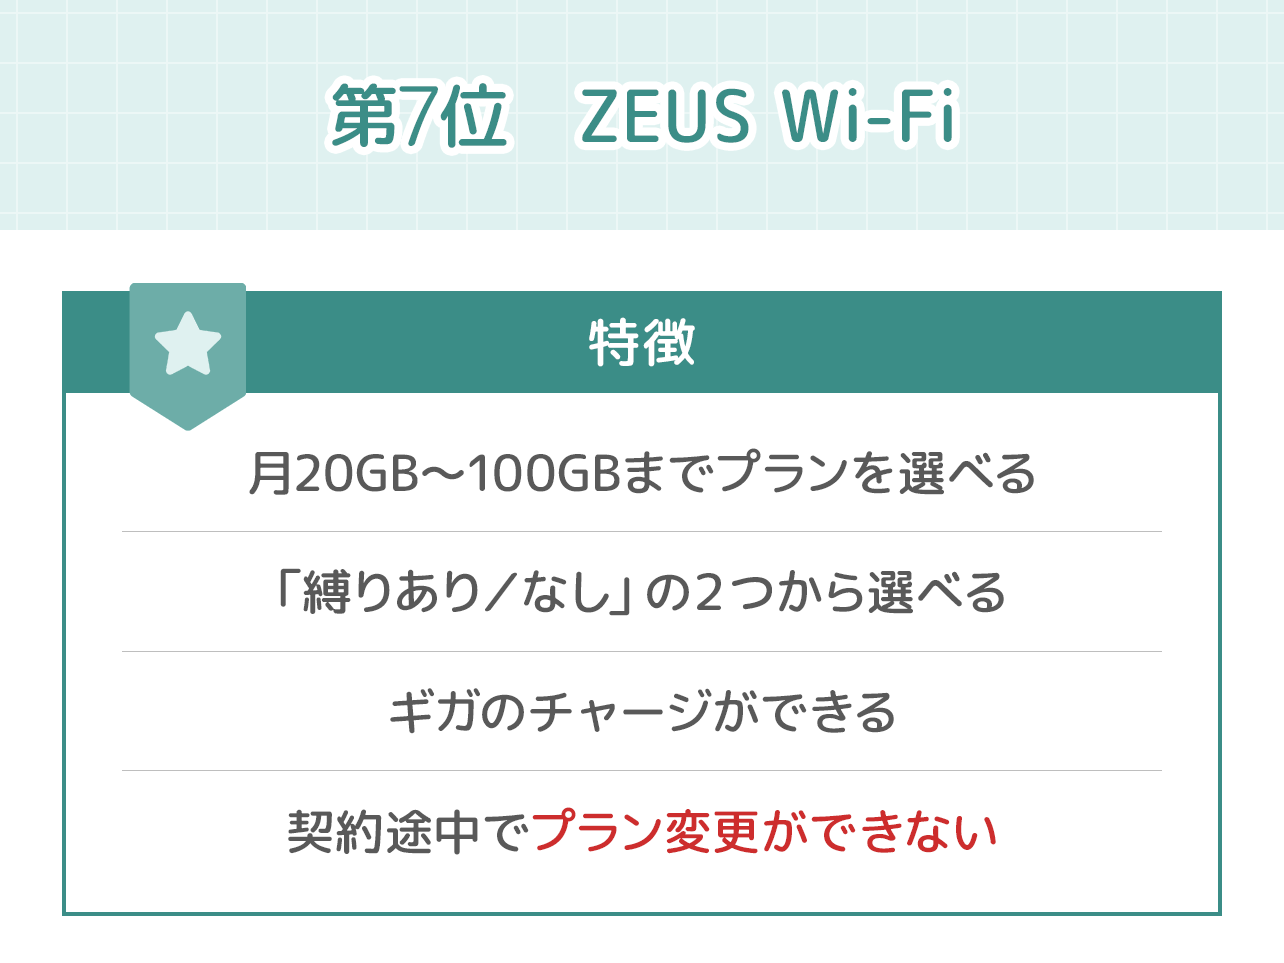 ポケットWi-Fiおすすめ第７位「ZEUS Wi-Fi」